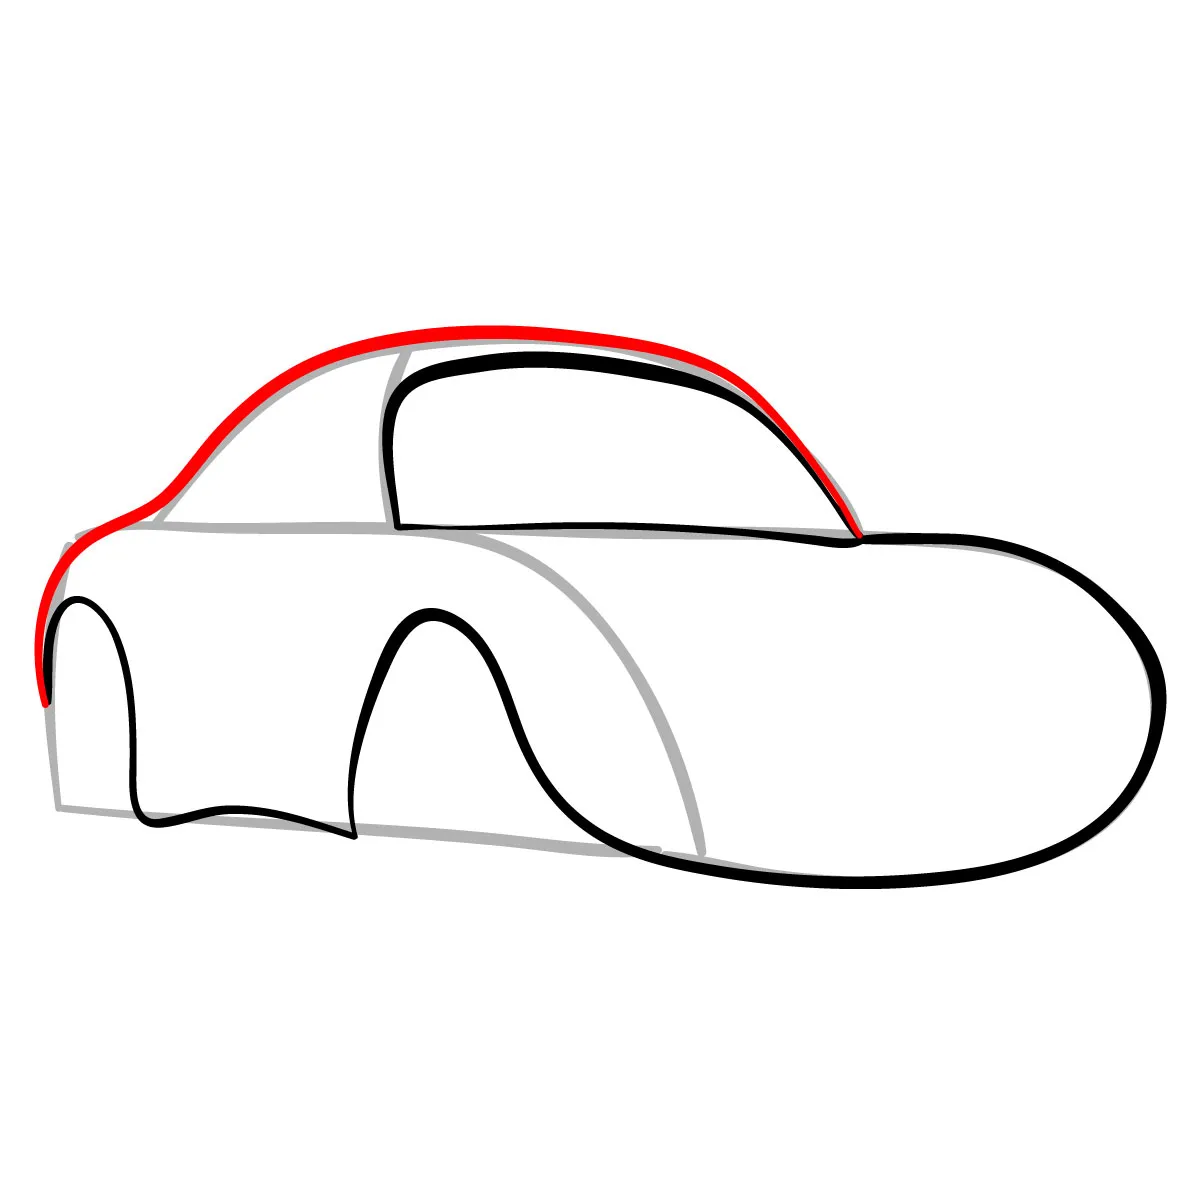 Vẽ ô tô  Cách vẽ siêu đơn giản cho người mới bắt đầu